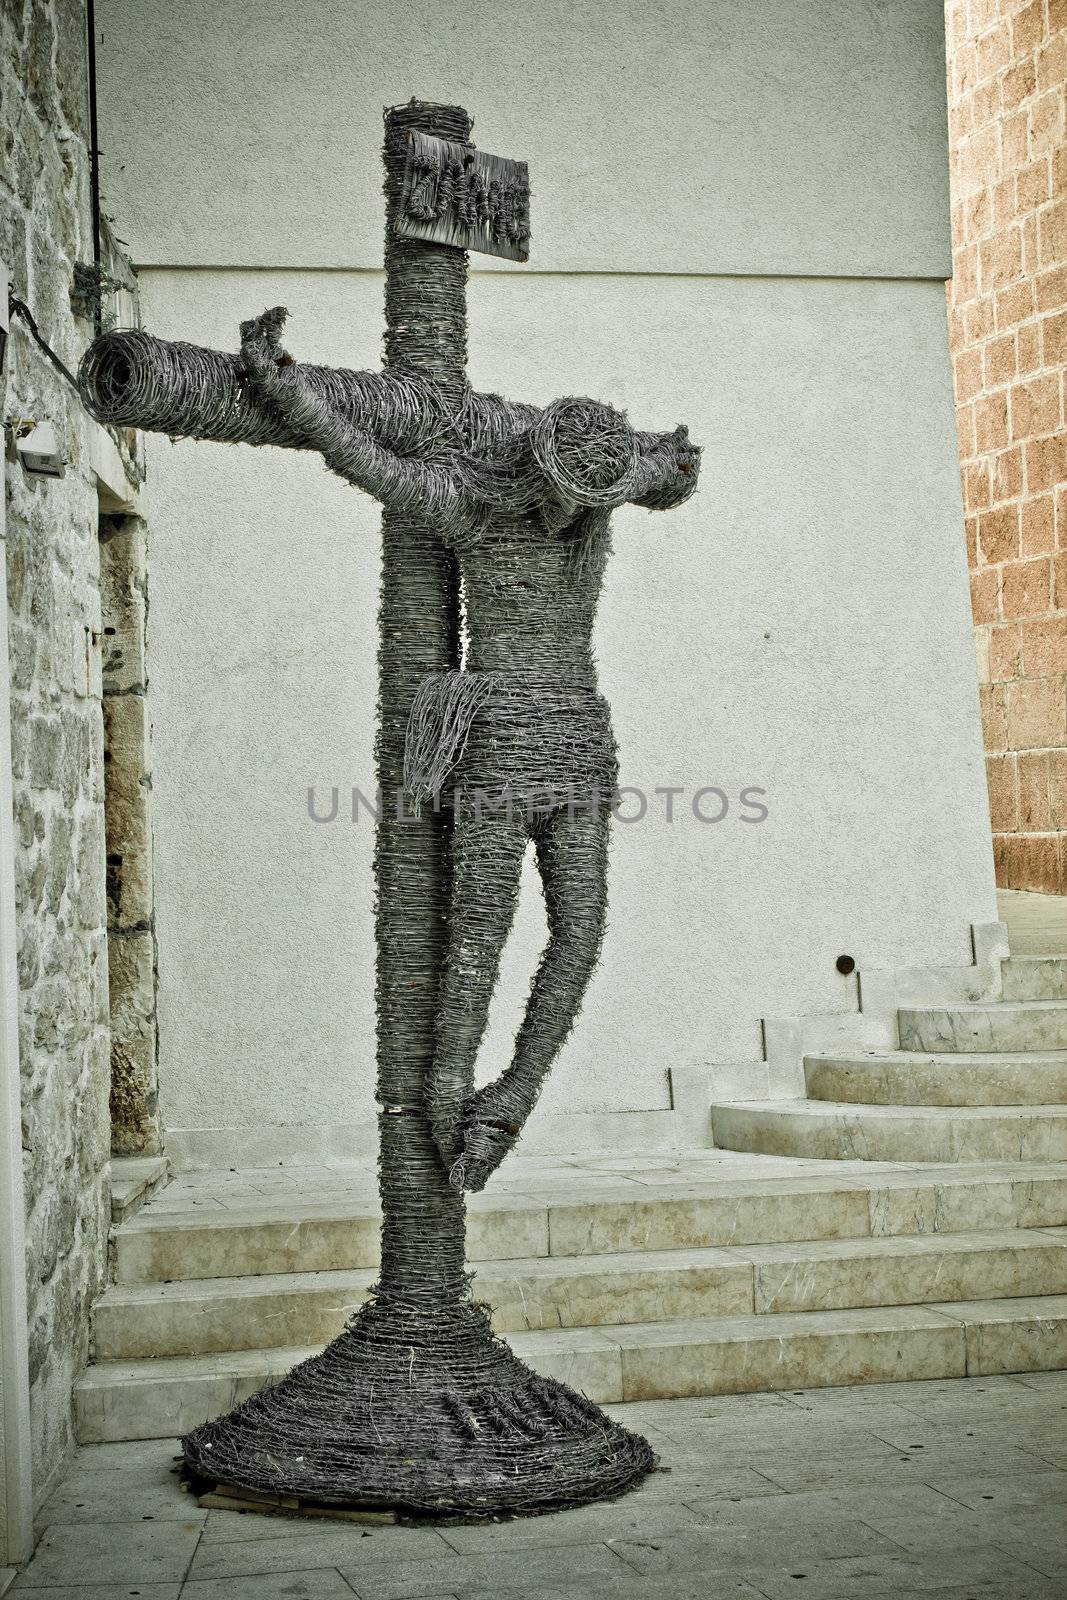 Barb wire Jesus Christ crucifixion by xbrchx